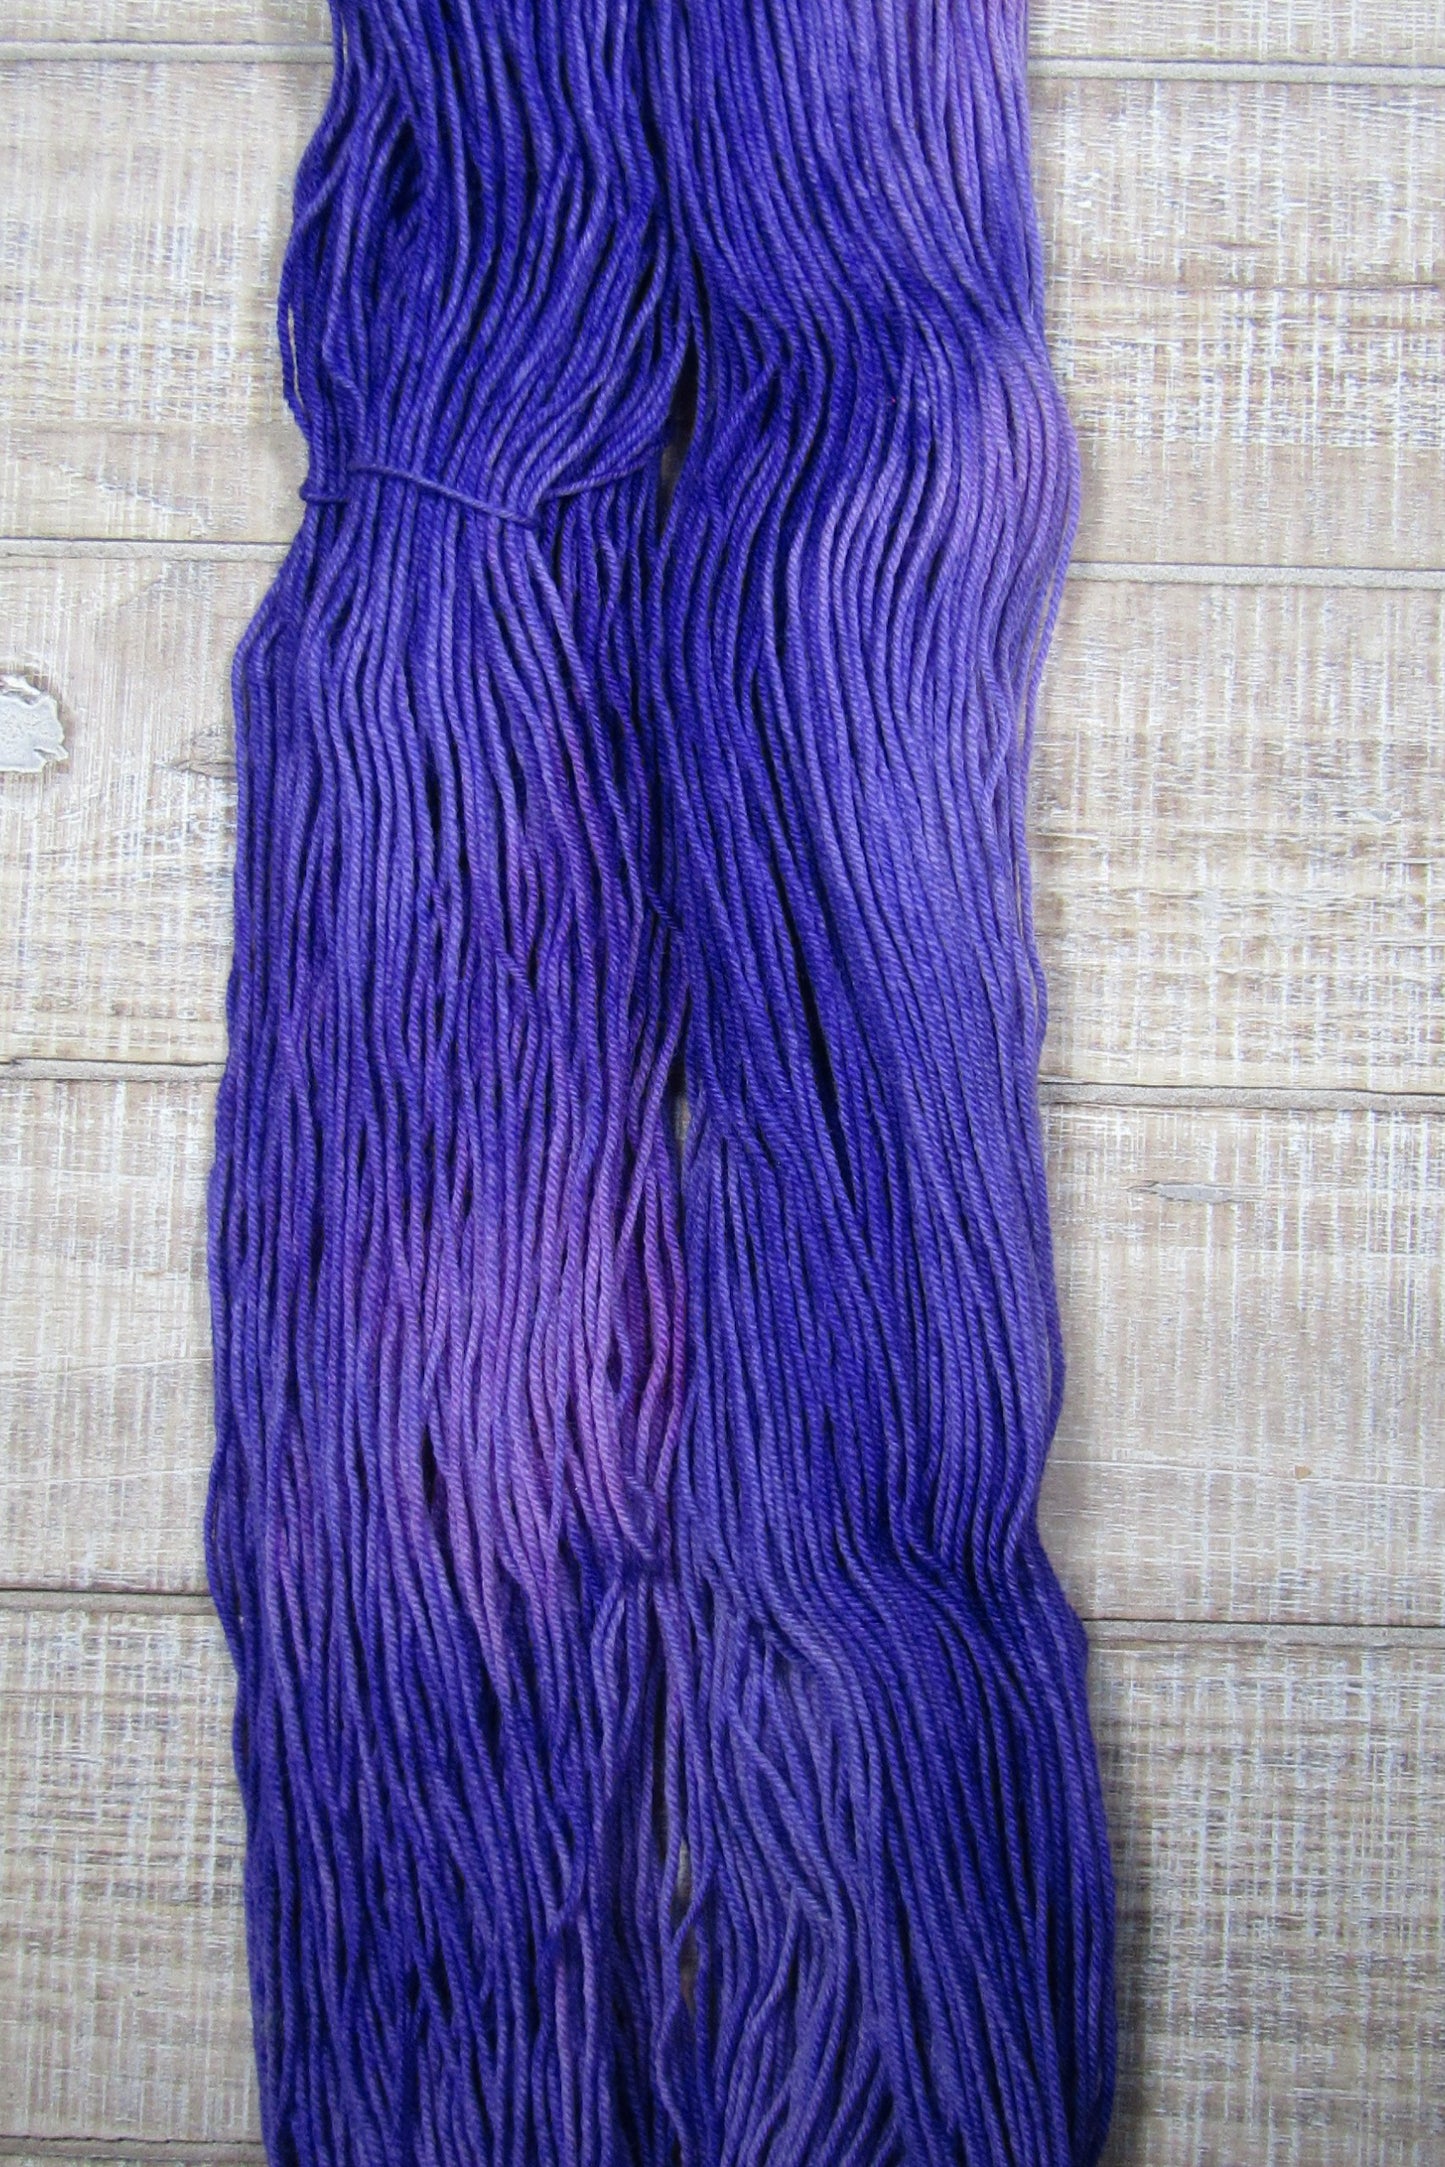 Hand-Dyed Yarn Superwash Merino/Nylon Fingering Weight Pansy shades of purple.